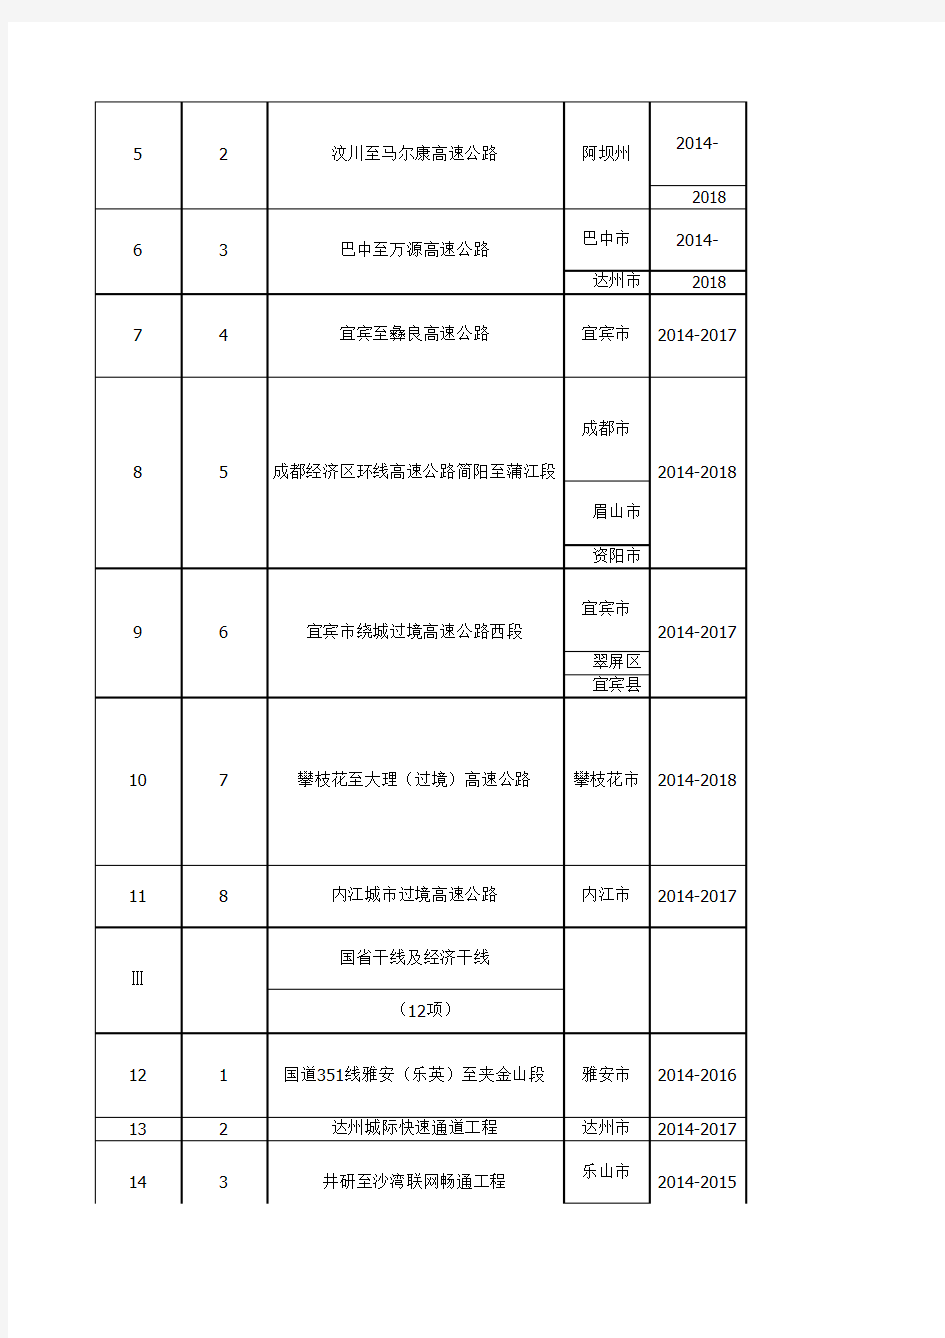 四川省2014年新开工重点项目名单